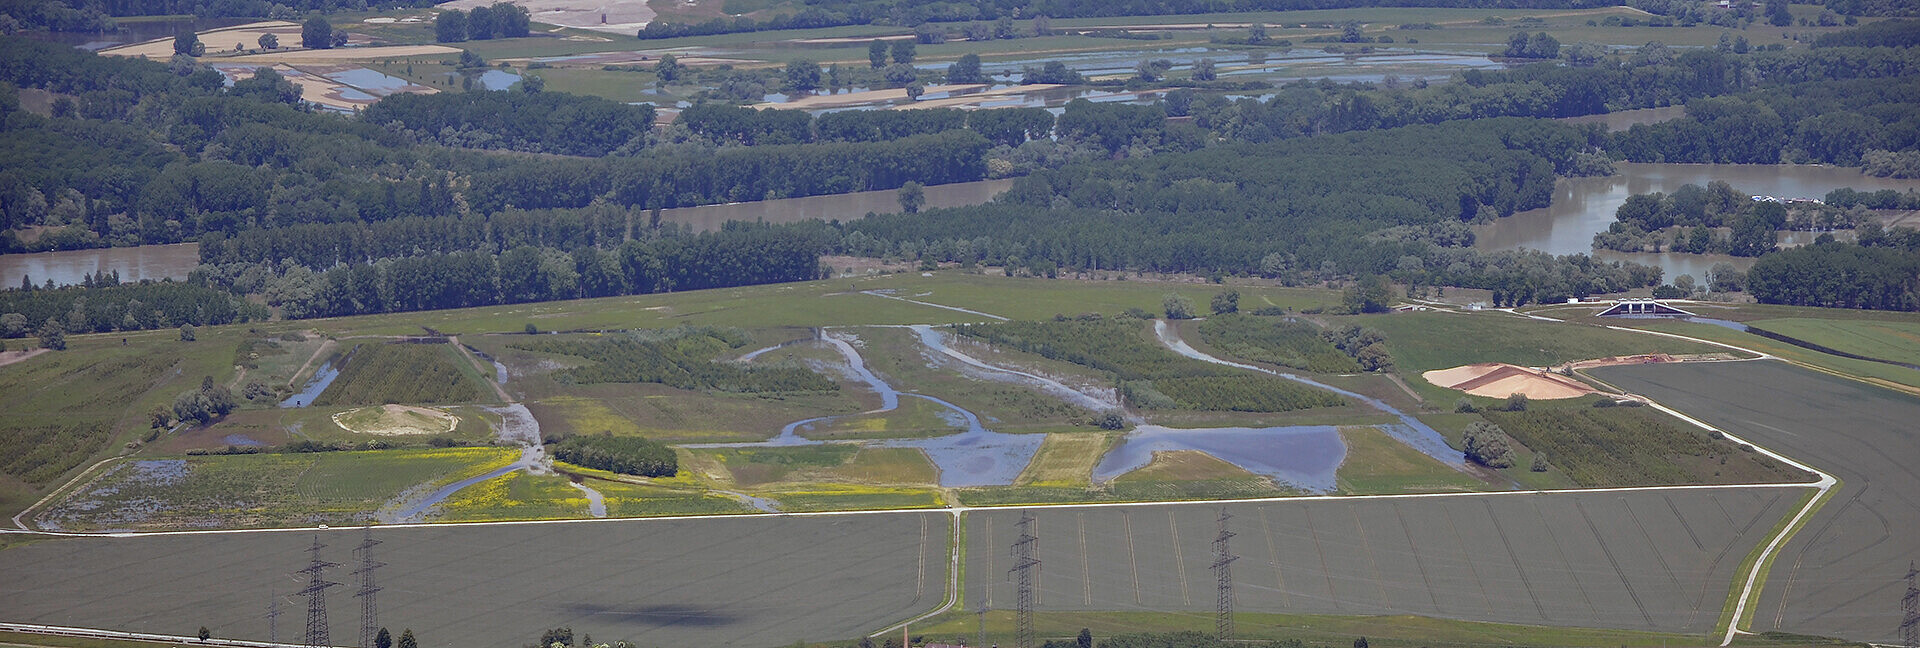 Luftbildaufnahme des Polder Rheinschanzinsel mit Blick in Richtung Norden. Zu sehen sind die mit Wasser gefüllten Gräben und Schluten im Bereich der Fläche für die partiellen Flutungen zur Auenrenaturierung. Im Hintergrund ist das überflutete Rheinvorland und auf der gegenüberliegenden Seite des Rheins der Polder Mechtersheim zu sehen.